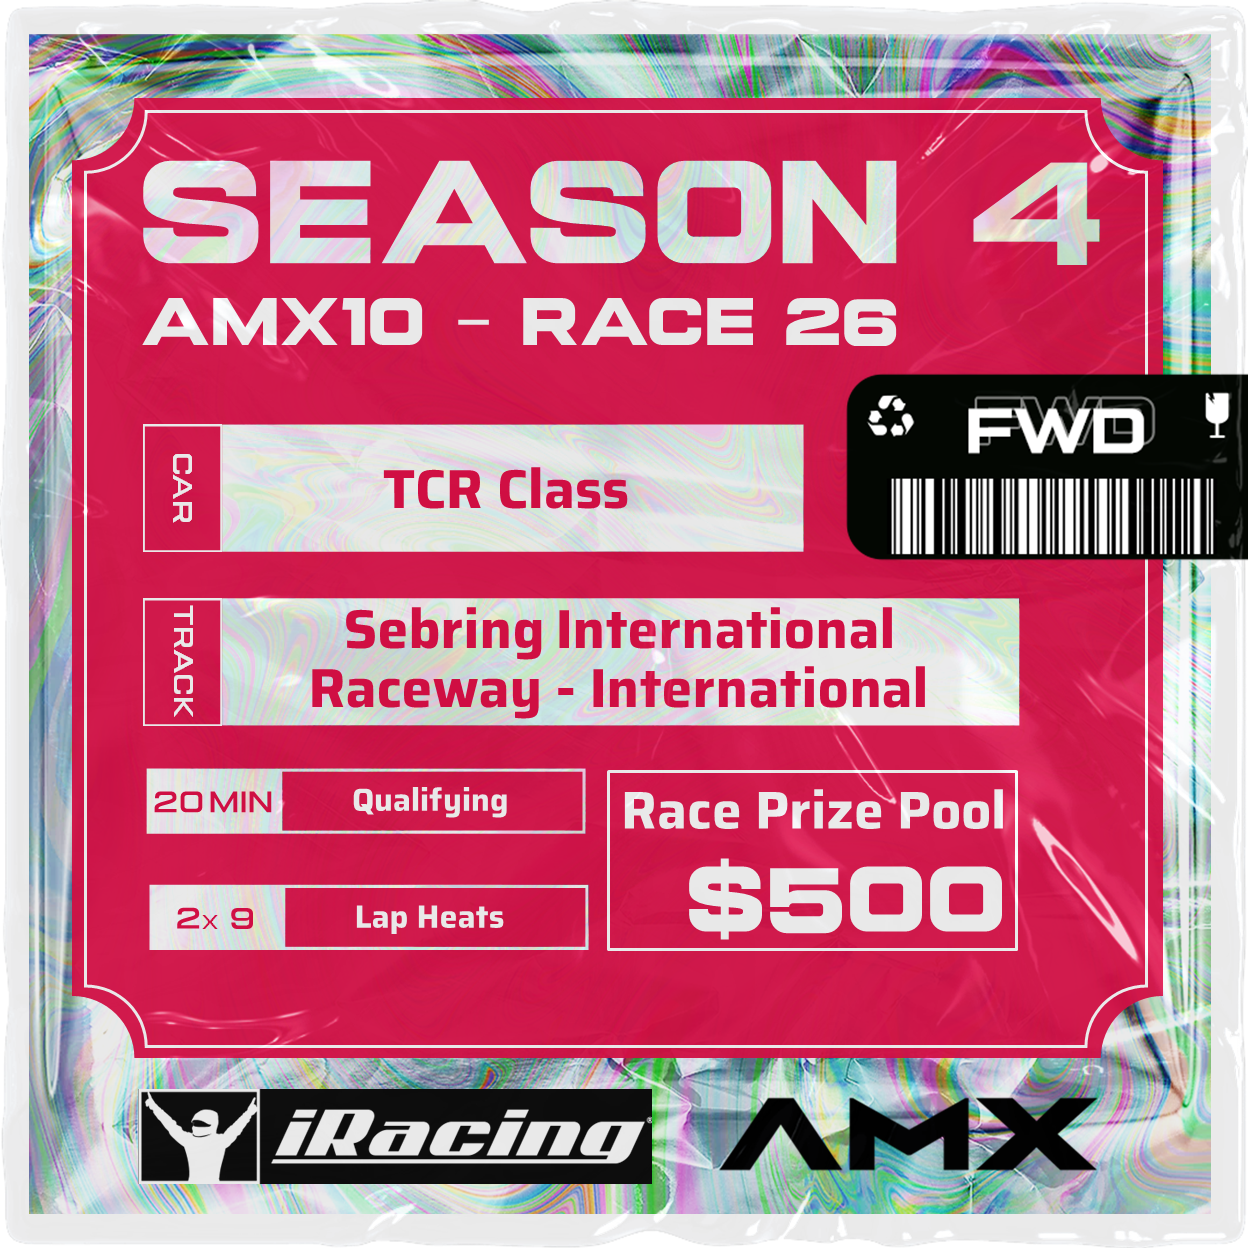 AMX10 - RACE 26 [4/2 - 7:20 PM GMT]